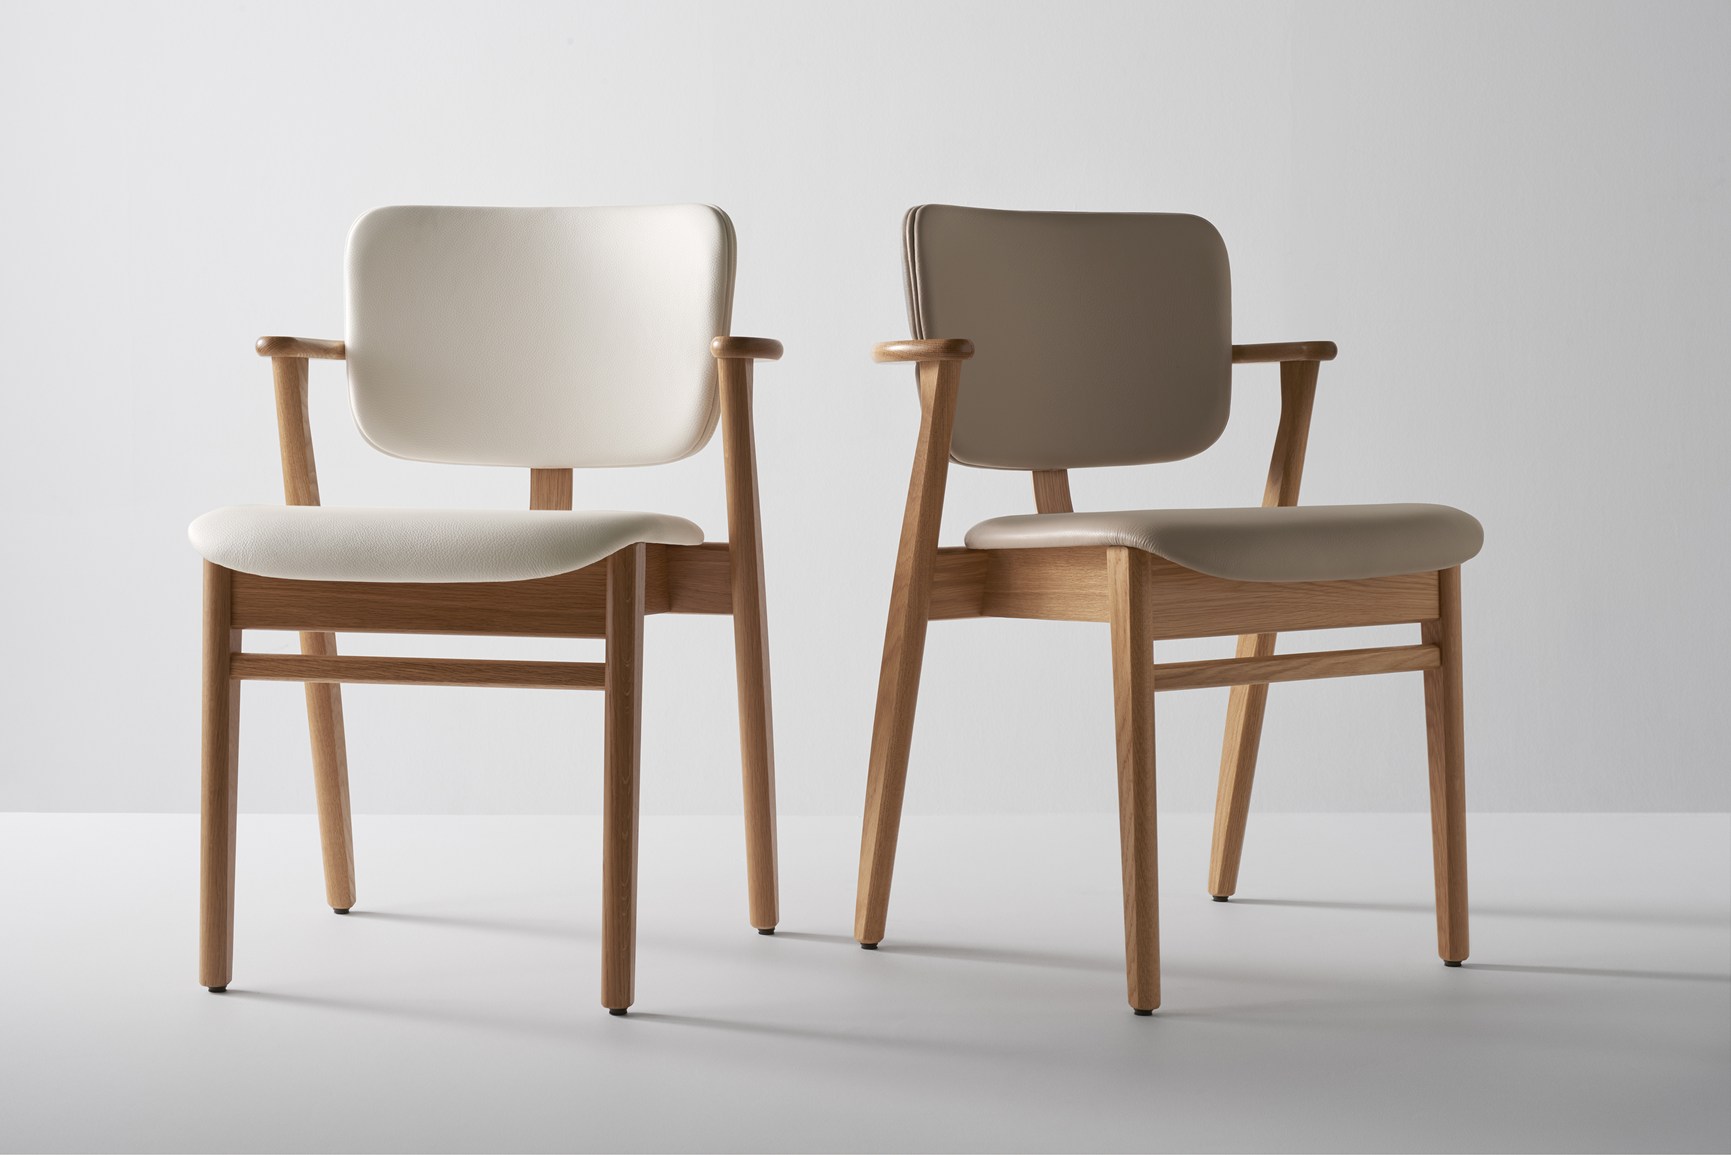 Domus Chairs by Ilmari Tapiovaara for Artek